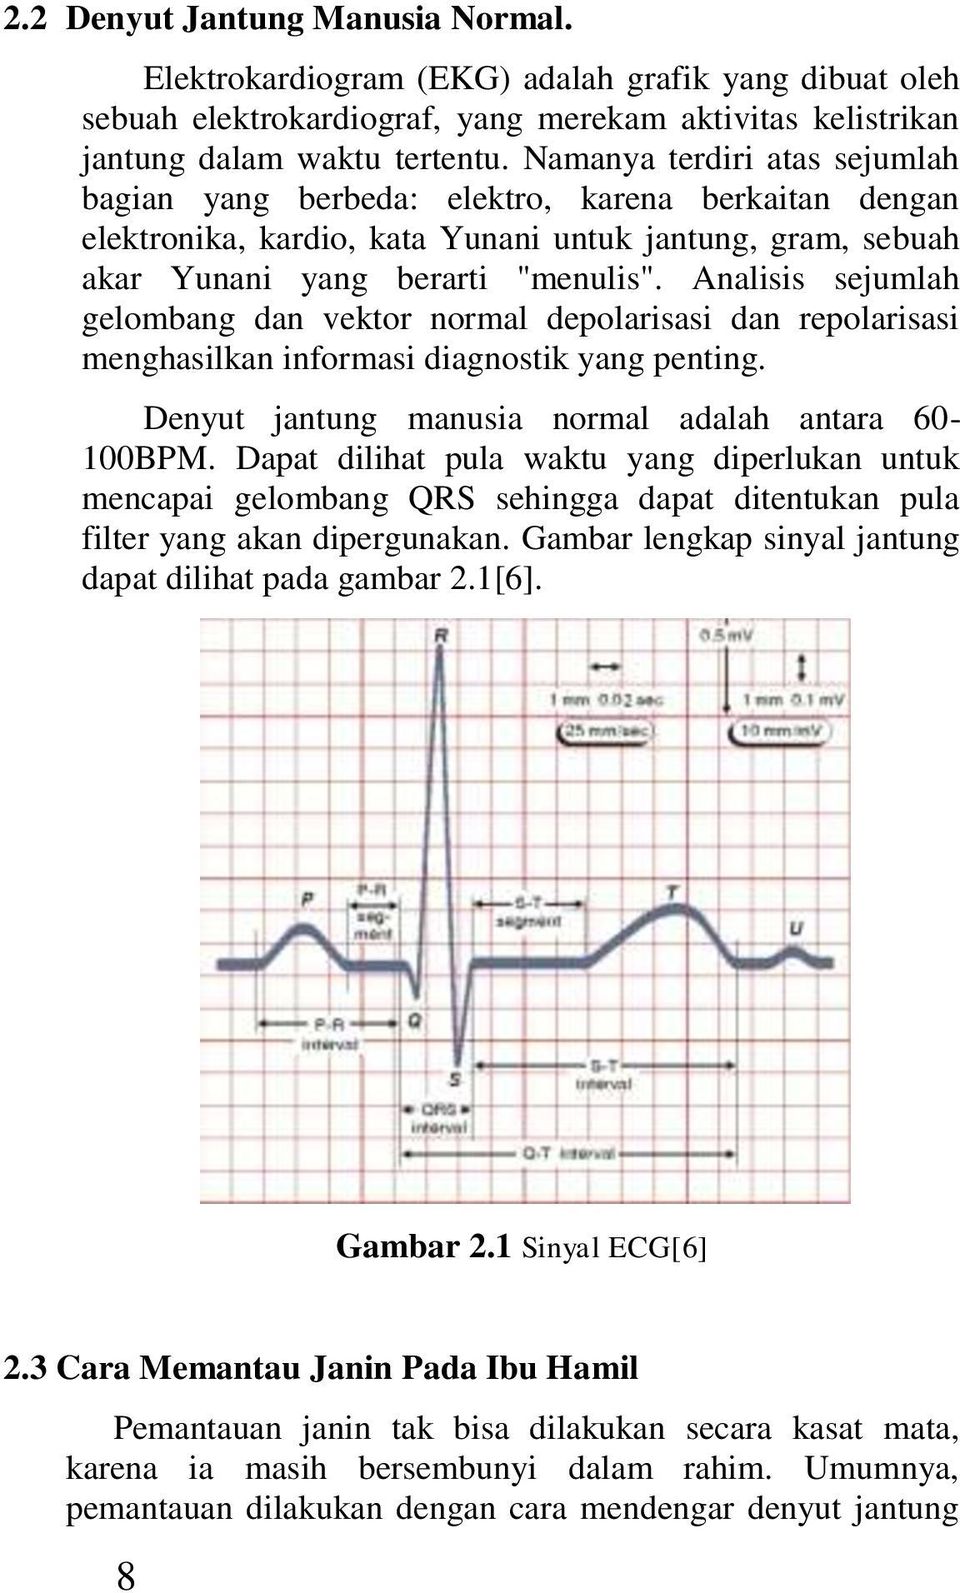 Analisis sejumlah gelombang dan vektor normal depolarisasi dan repolarisasi menghasilkan informasi diagnostik yang penting. Denyut jantung manusia normal adalah antara 60-100BPM.